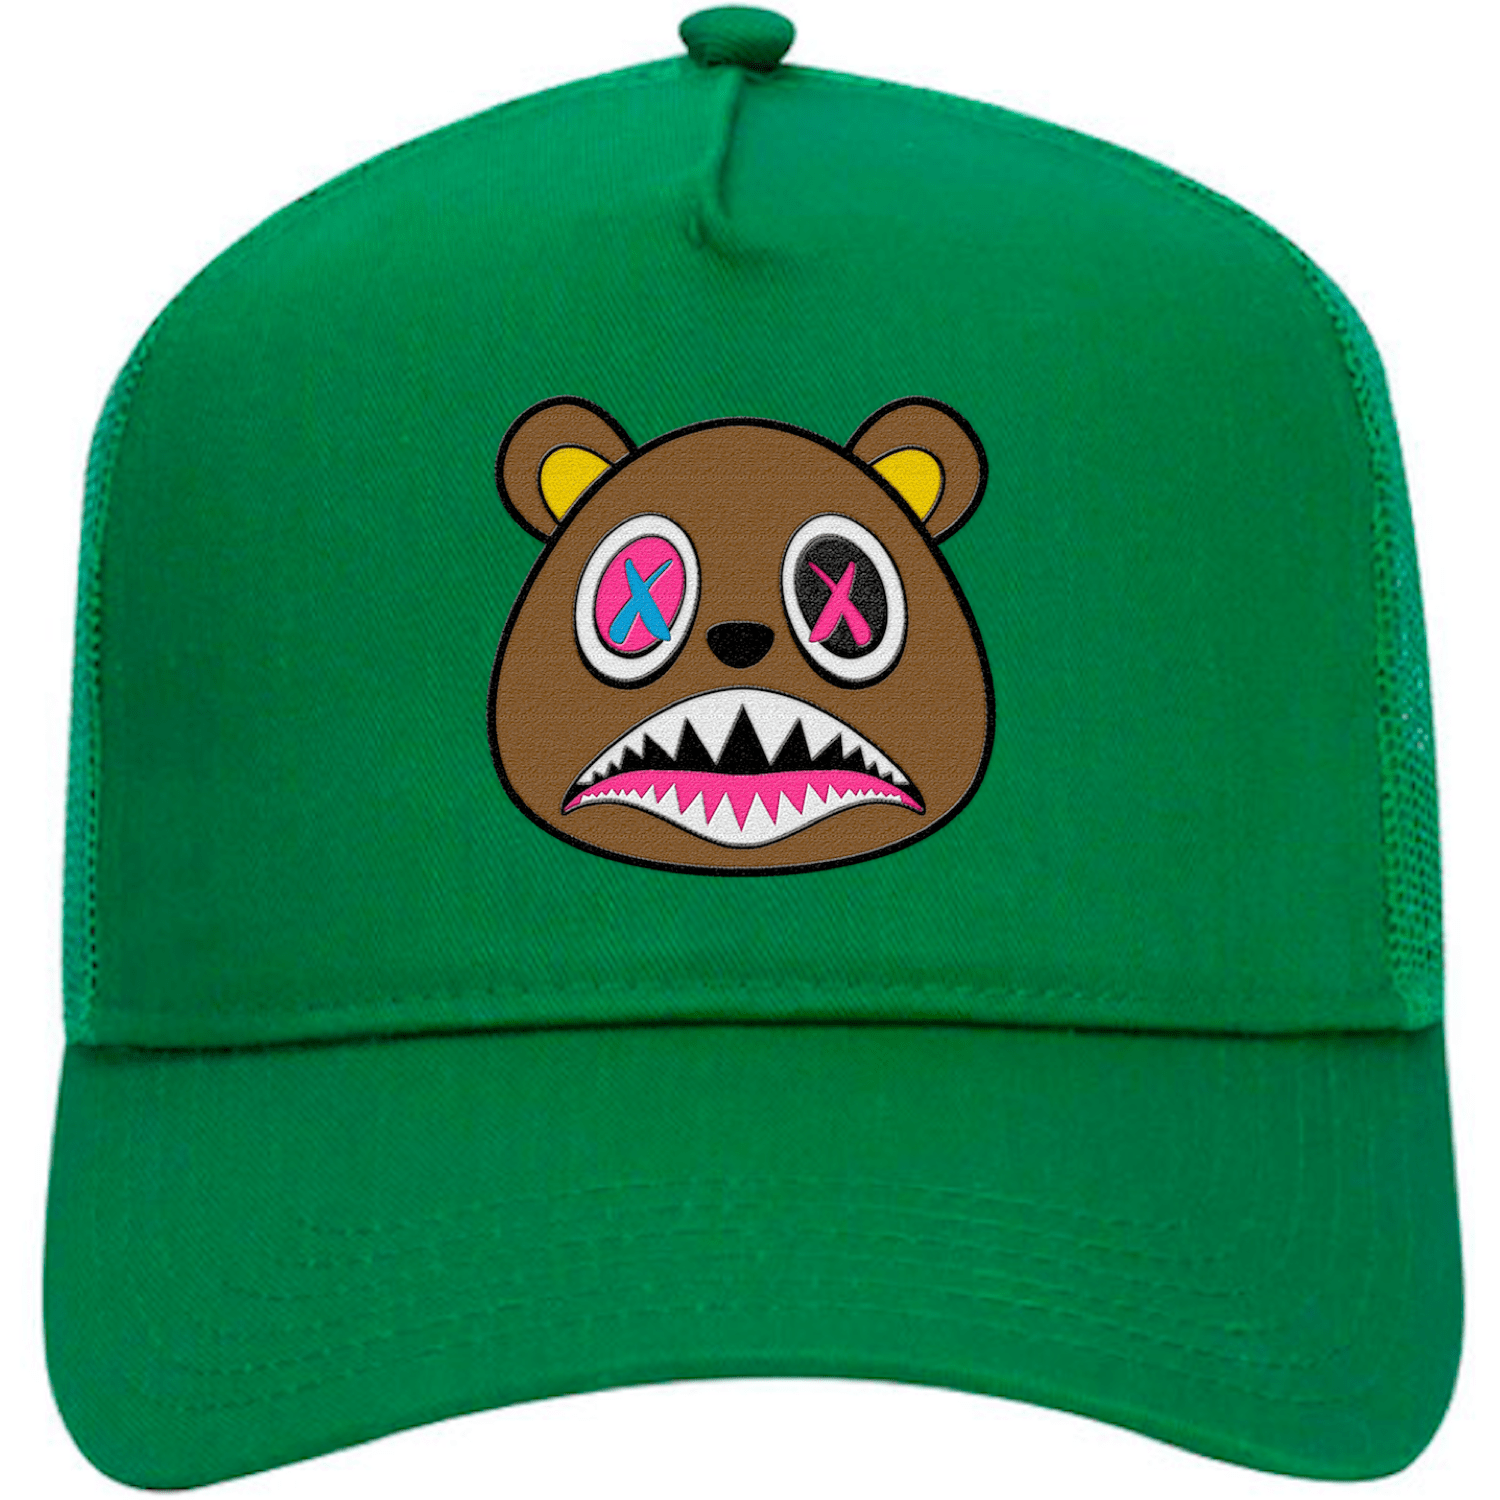 Lucky Green 5s Trucker Hats - Jordan 5 Lucky Green Hats - Crazy Baws